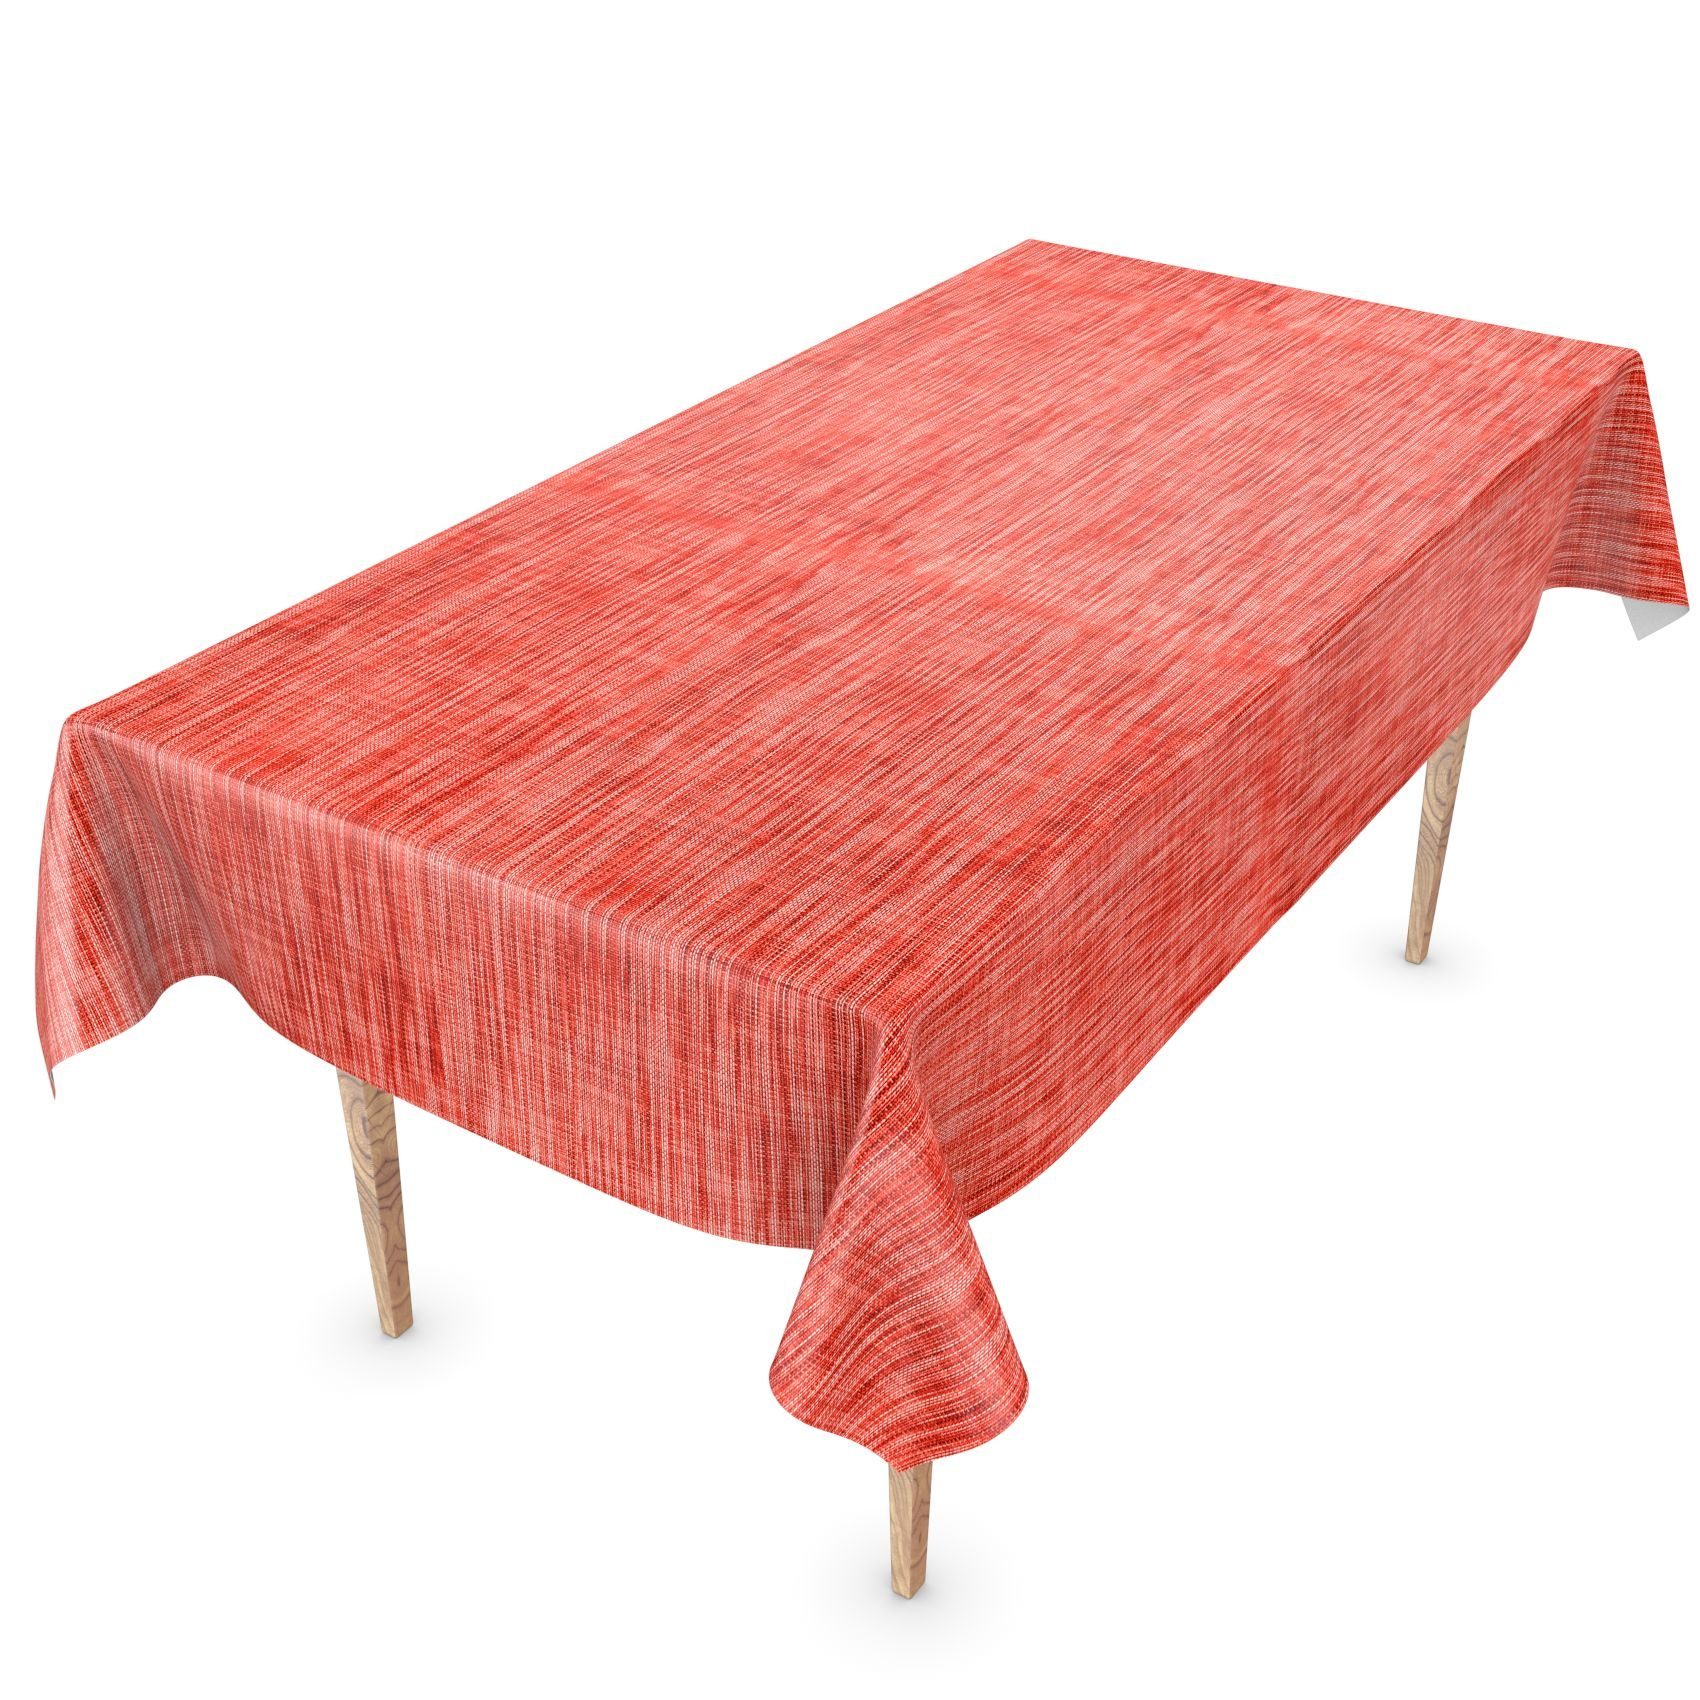 ANRO Tischdecke Tischdecke Wachstuch Einfarbig Rot Wasserabweisend 140, Robust Breite Glatt